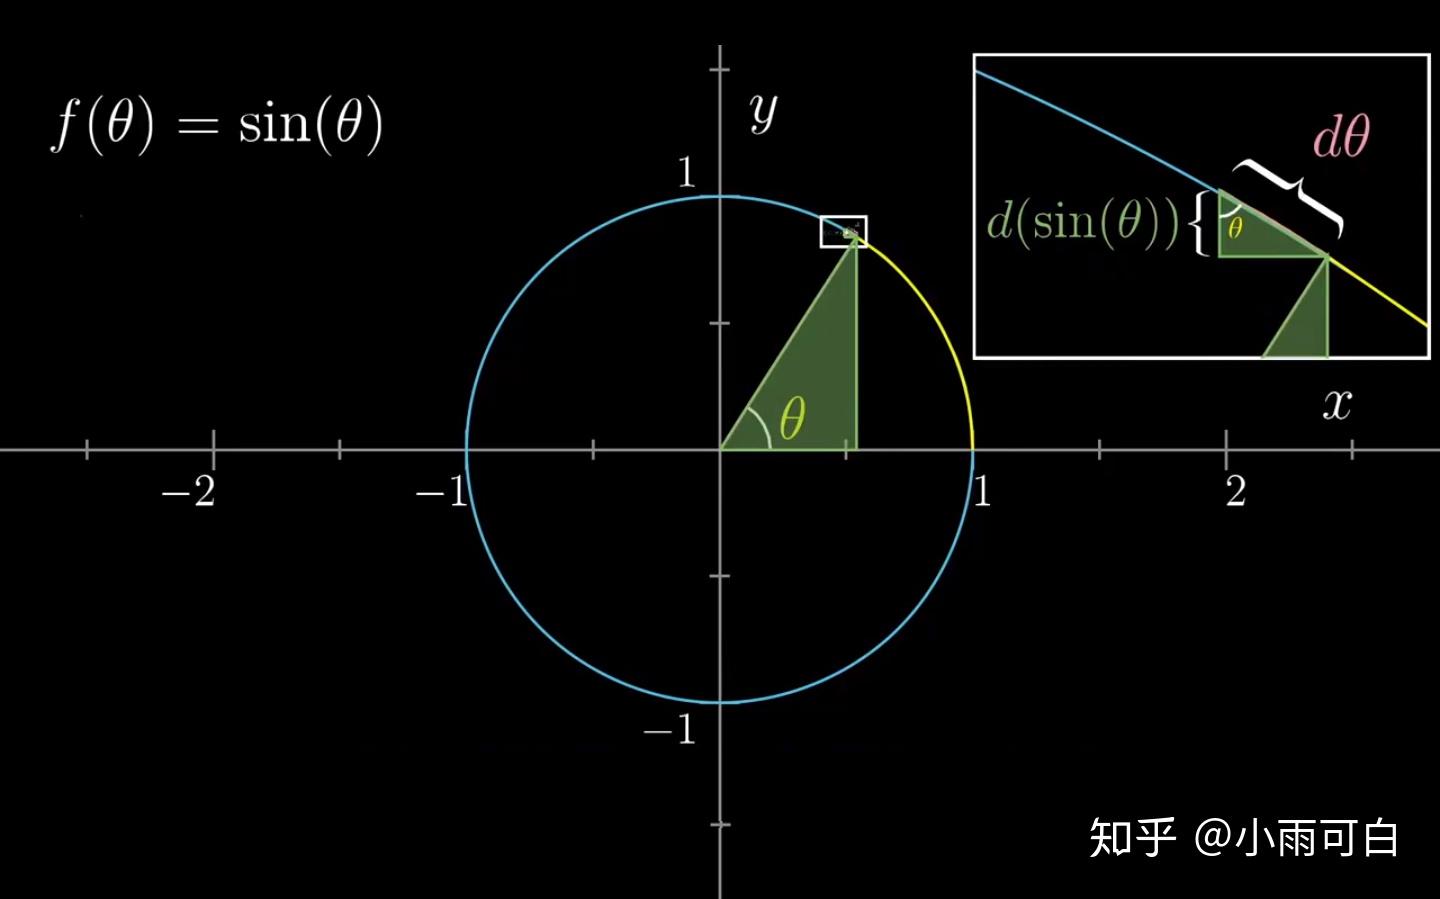 三角函数与反三角函数的定义、图像、导数（推导）完整版 - 戈小戈 - 博客园